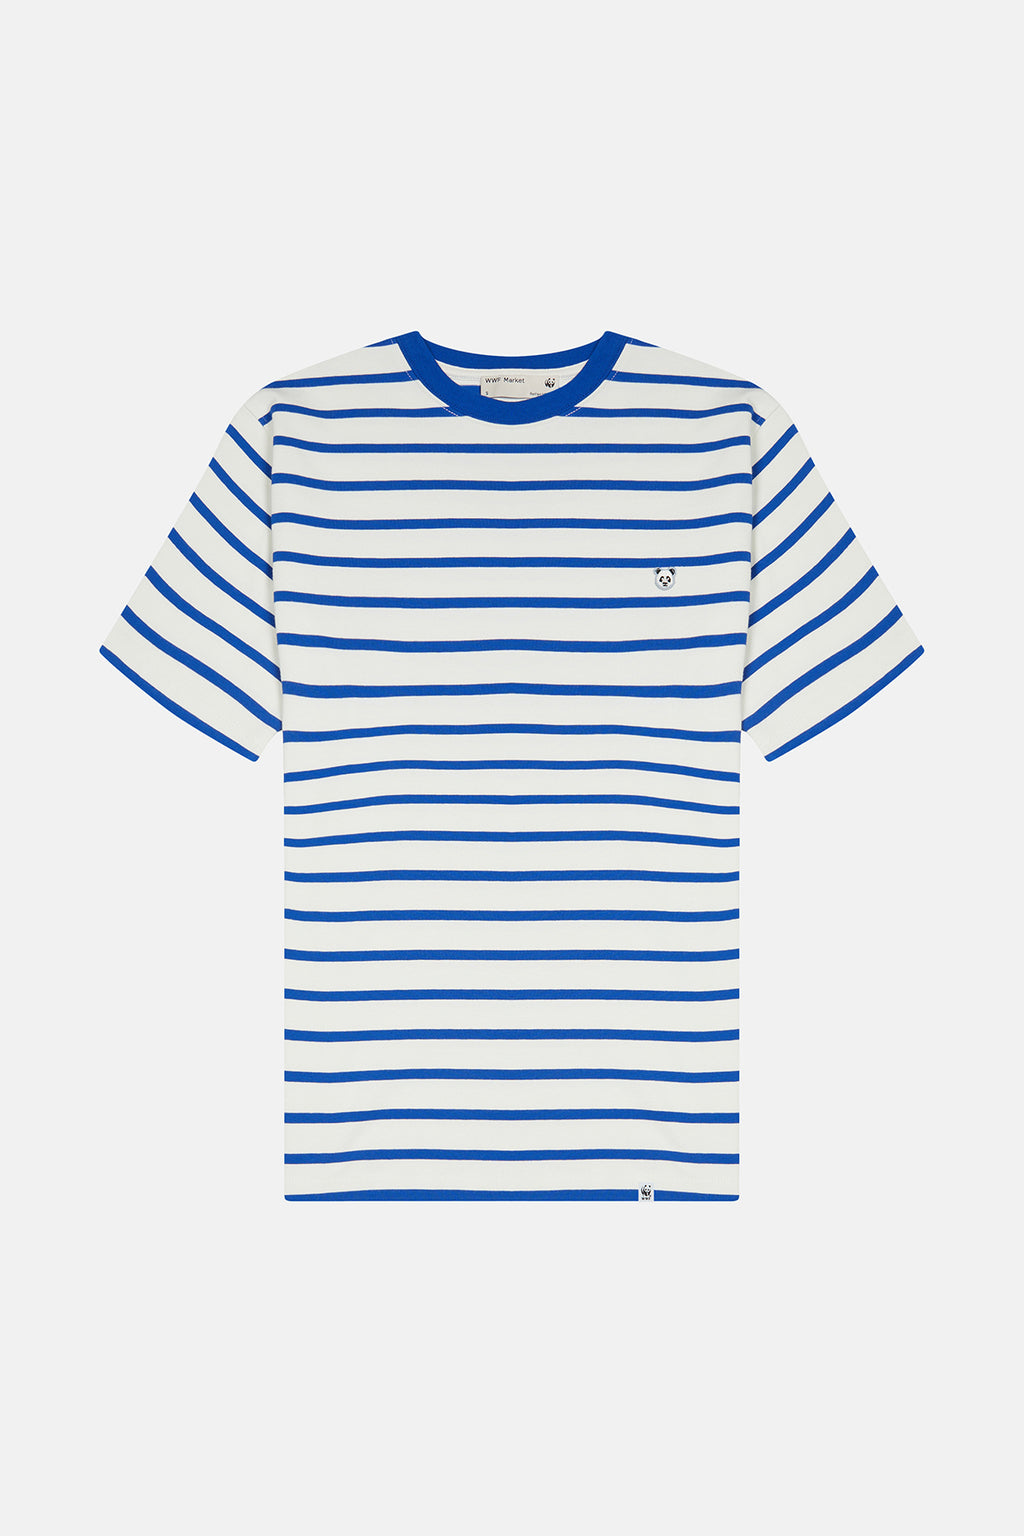 Panda Supreme Çizgili T-Shirt - Mavi/Krem